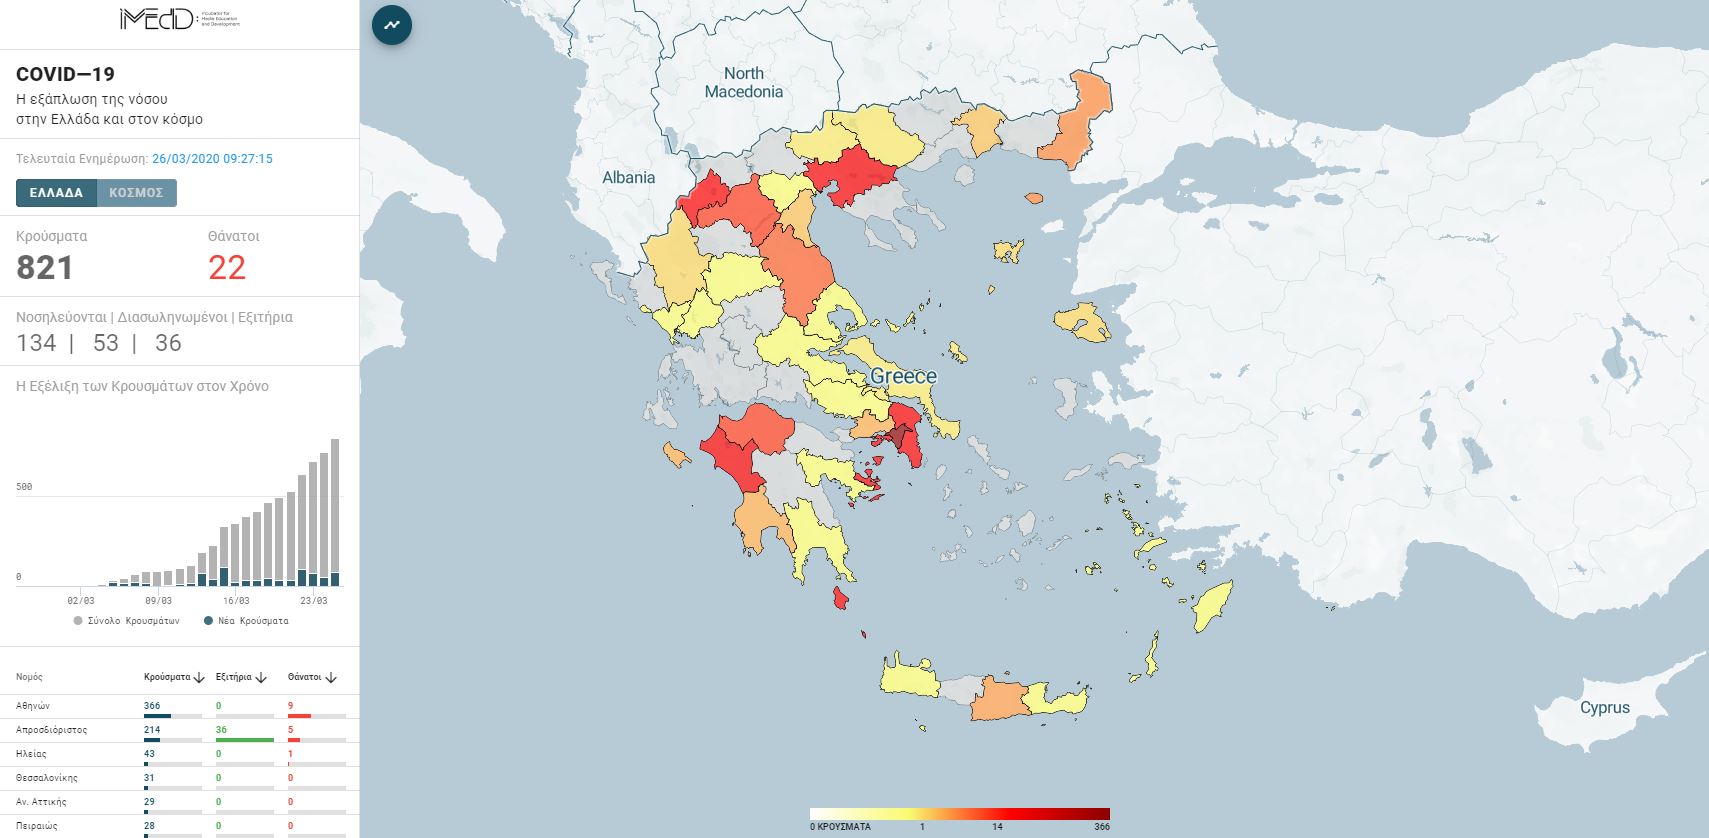 Κορονοϊός: Ο πληρέστερος χάρτης για την Ελλάδα και τον κόσμο – Κρούσματα, νοσηλευόμενοι και θάνατοι ανά περιοχή